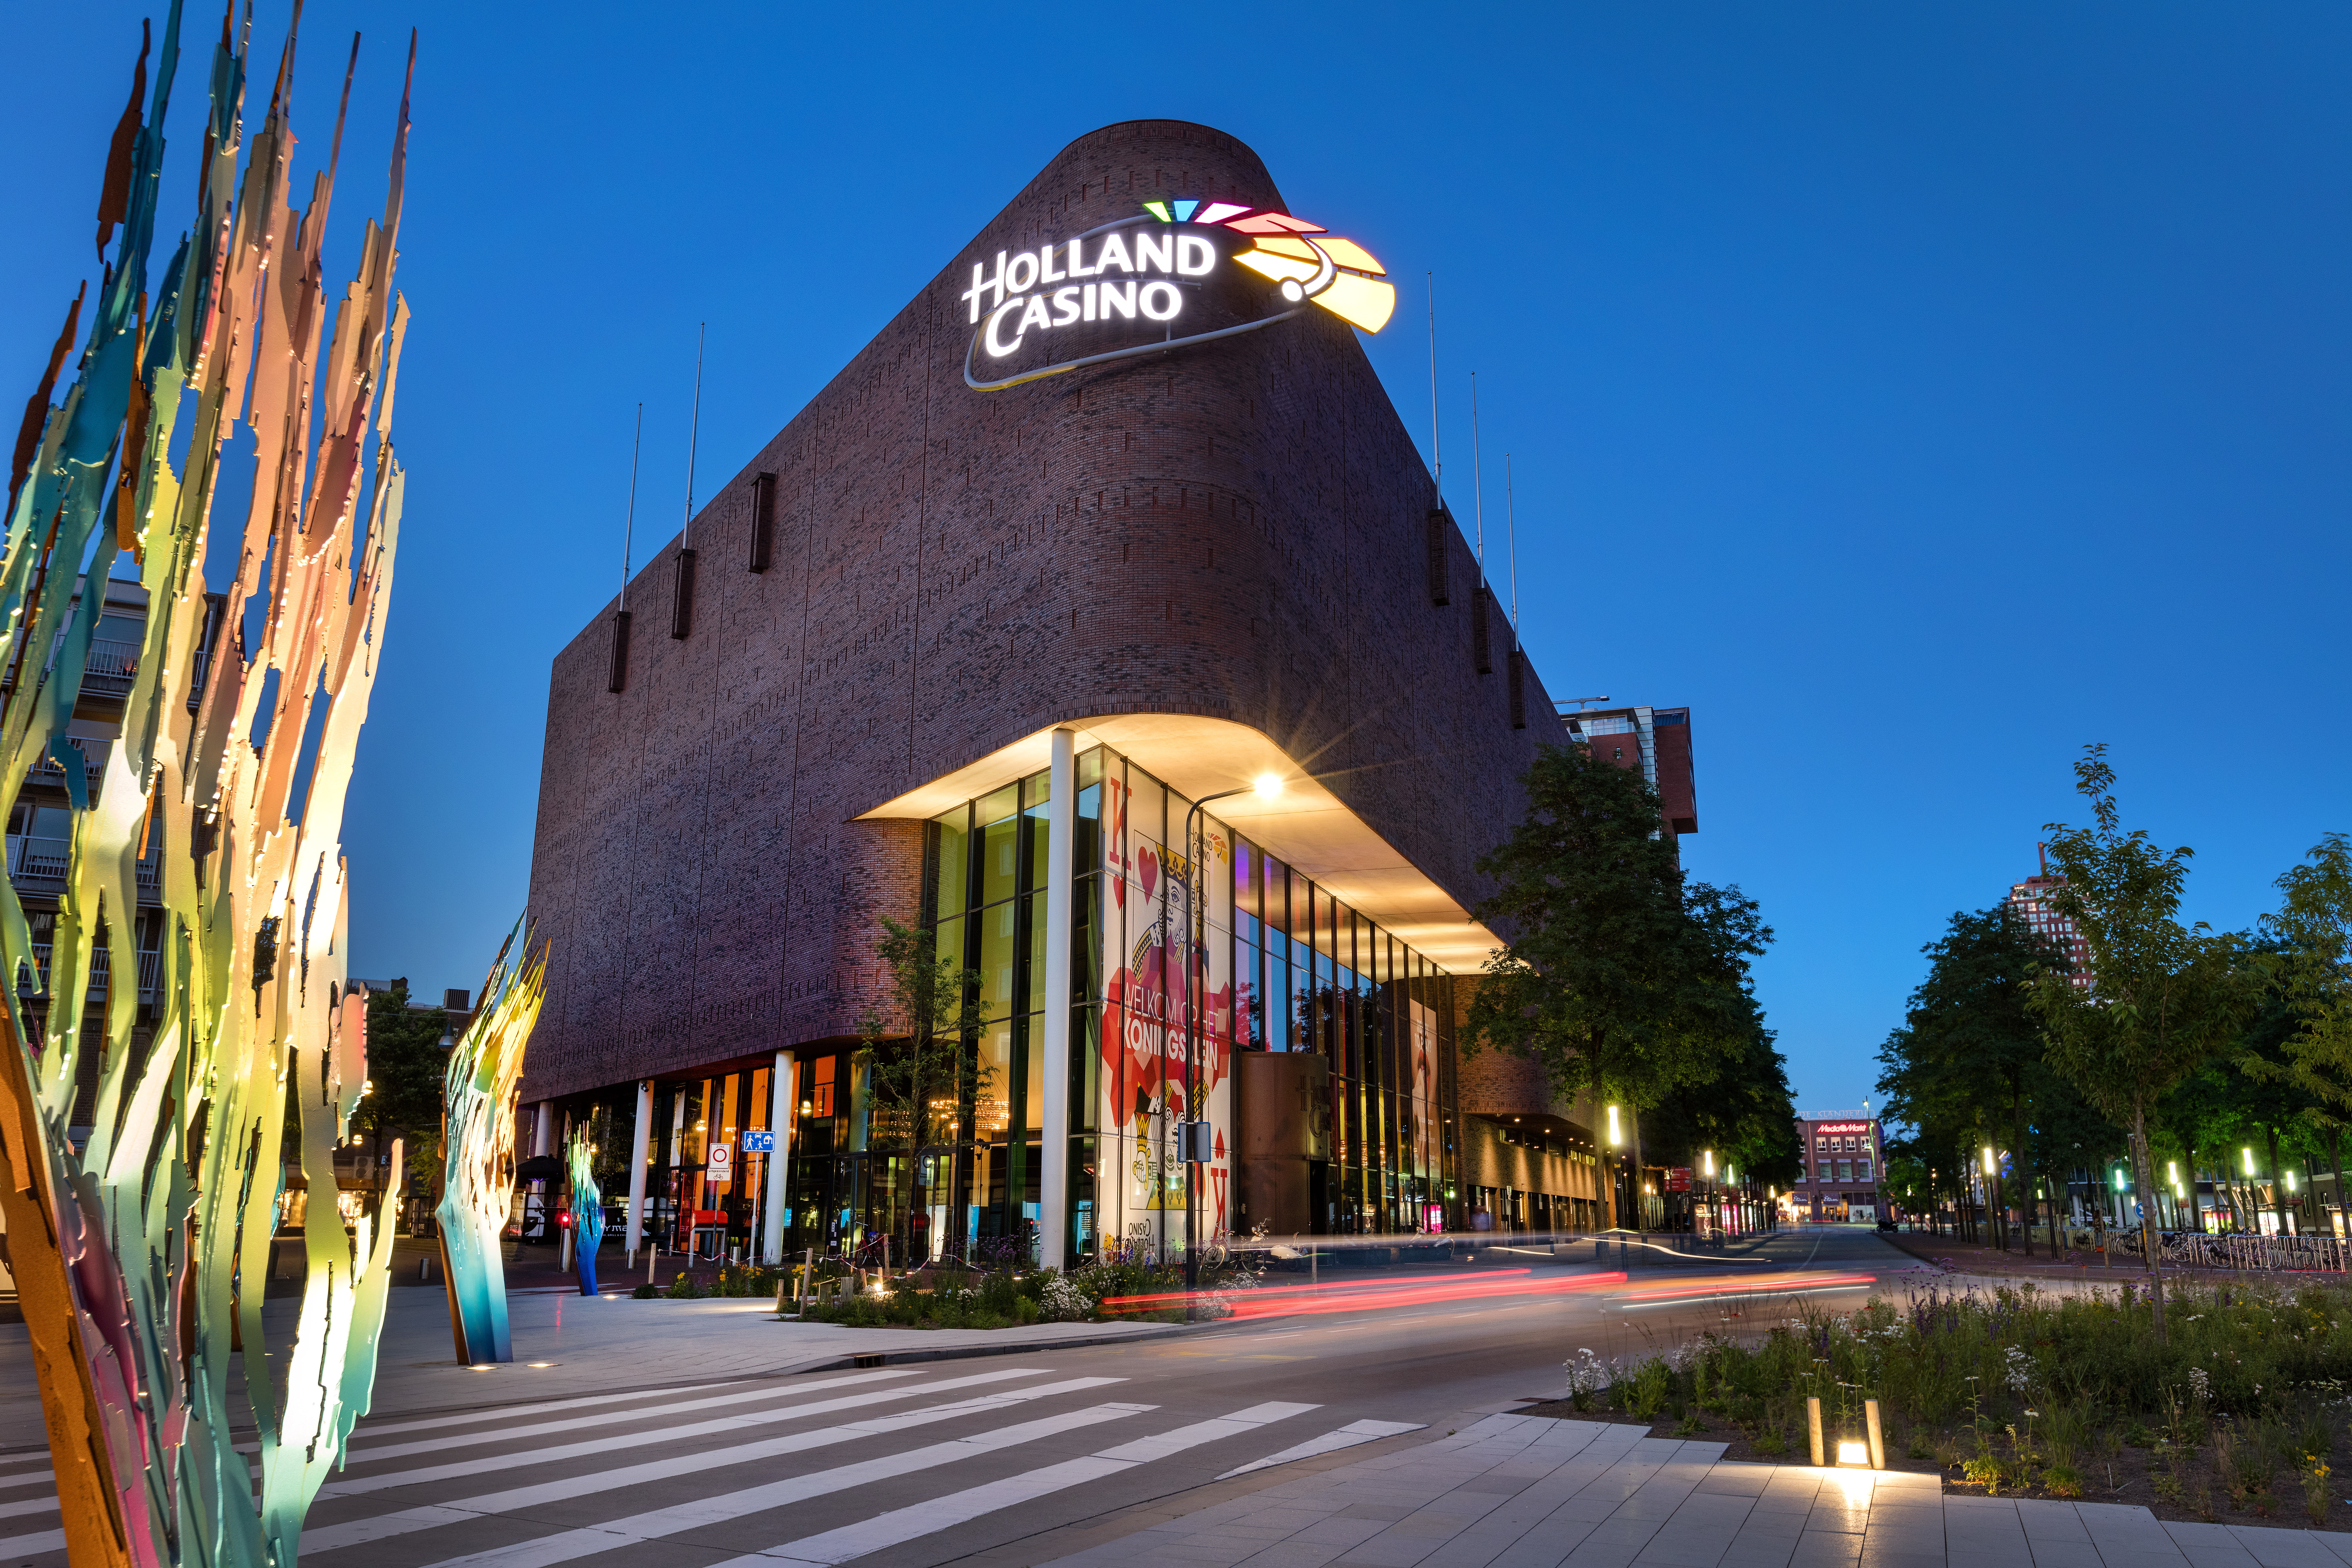 Winnaar ontvangt ruim 250.000 euro bij Holland Casino Enschede